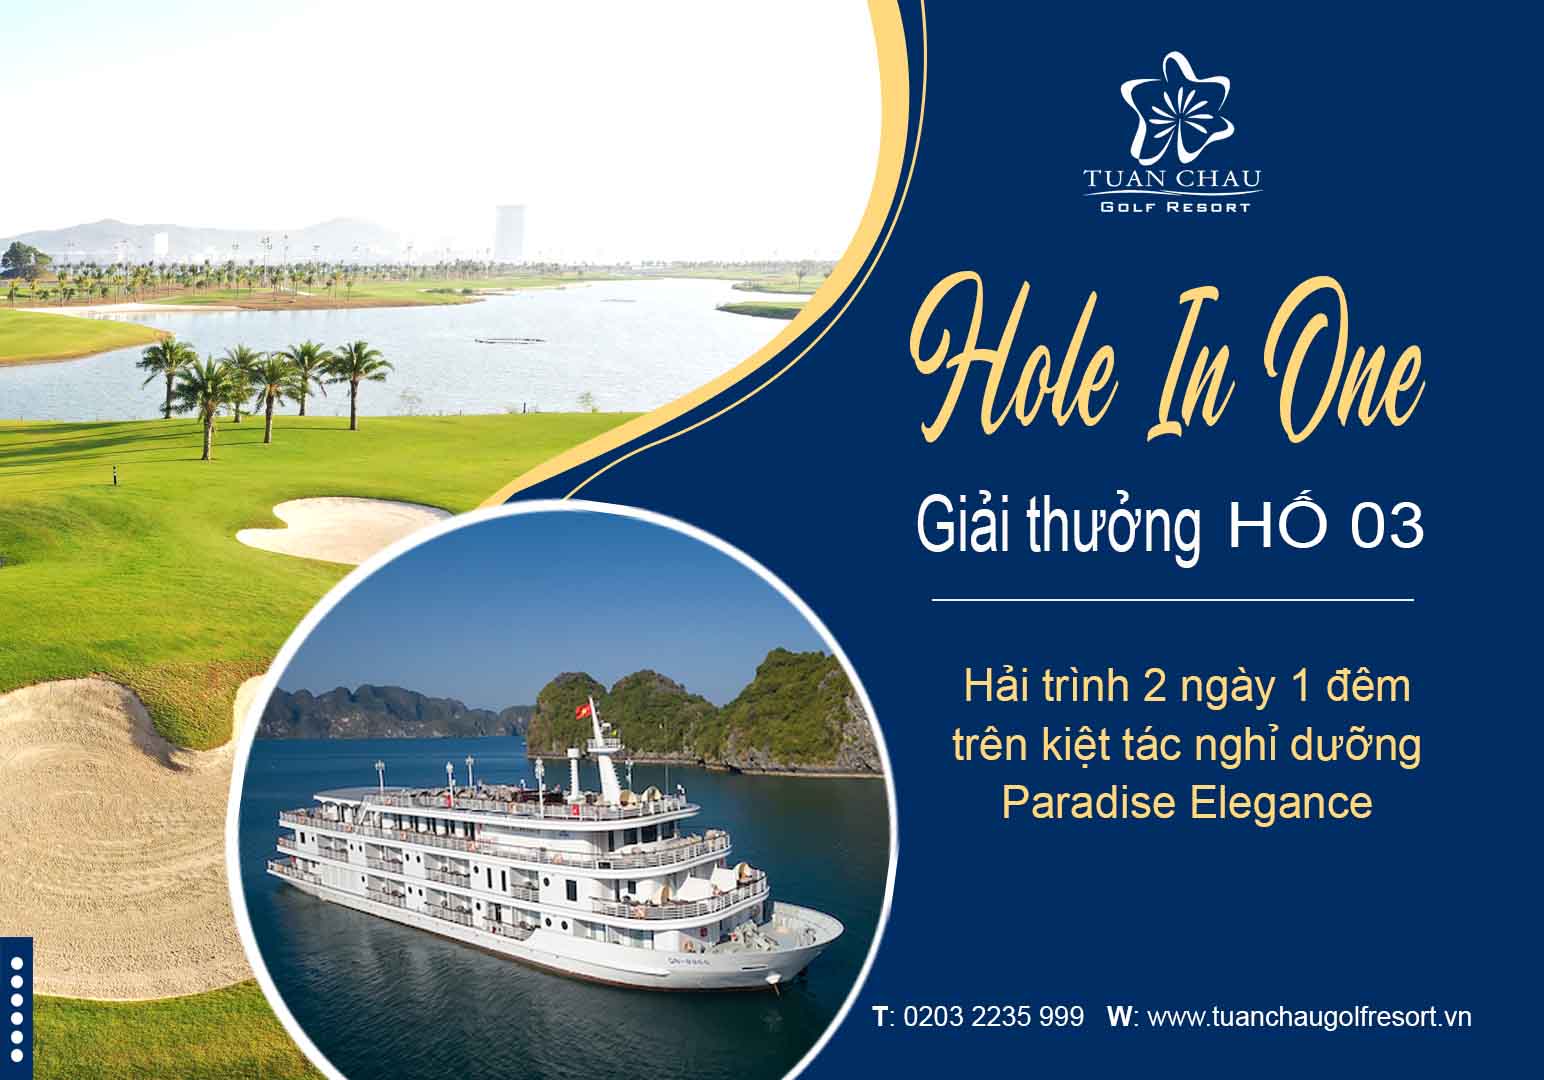 HIO hố 3 Sân golf Tuần Châu - Cùng Paradise thưởng ngoạn kiệt tác nghỉ dưỡng trên vịnh Hạ Long